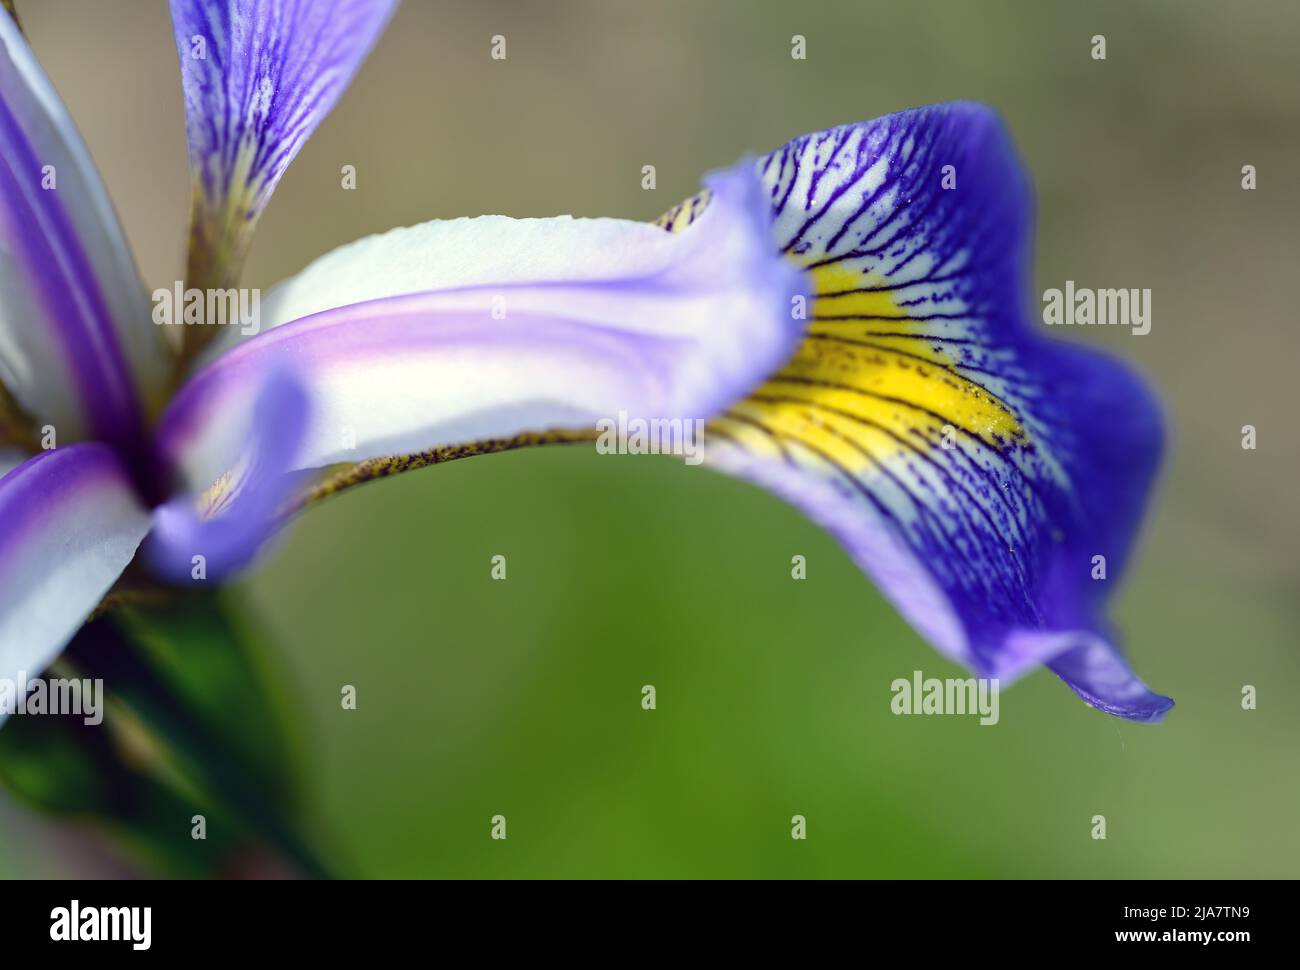 Iris aux pétales violets, blancs et jaunes. Macro gros plan montrant les détails fins du pétale. Fleur d'iris colorée vue dans le Kent, Royaume-Uni. Banque D'Images